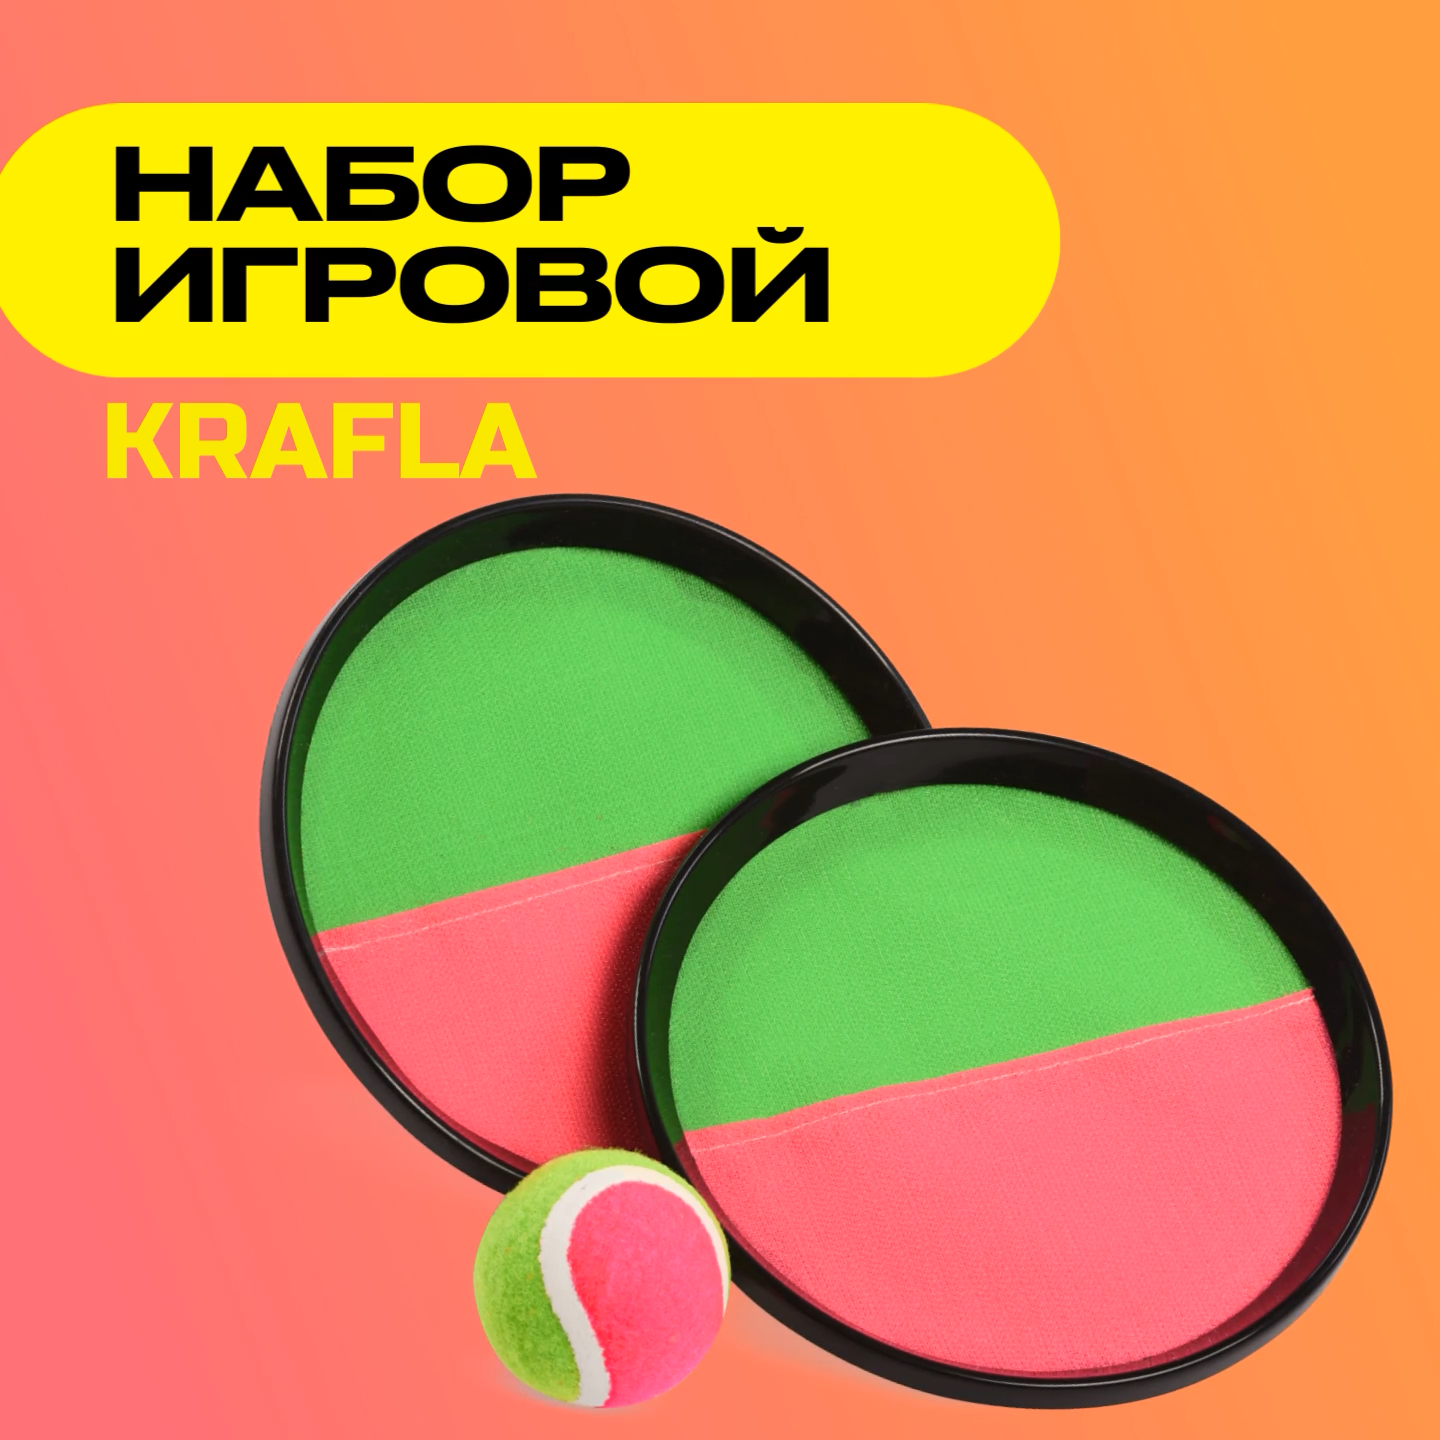 Набор игровой KRAFLA S-PL200 (тарелки-ловушки 2 шт. и мяч)